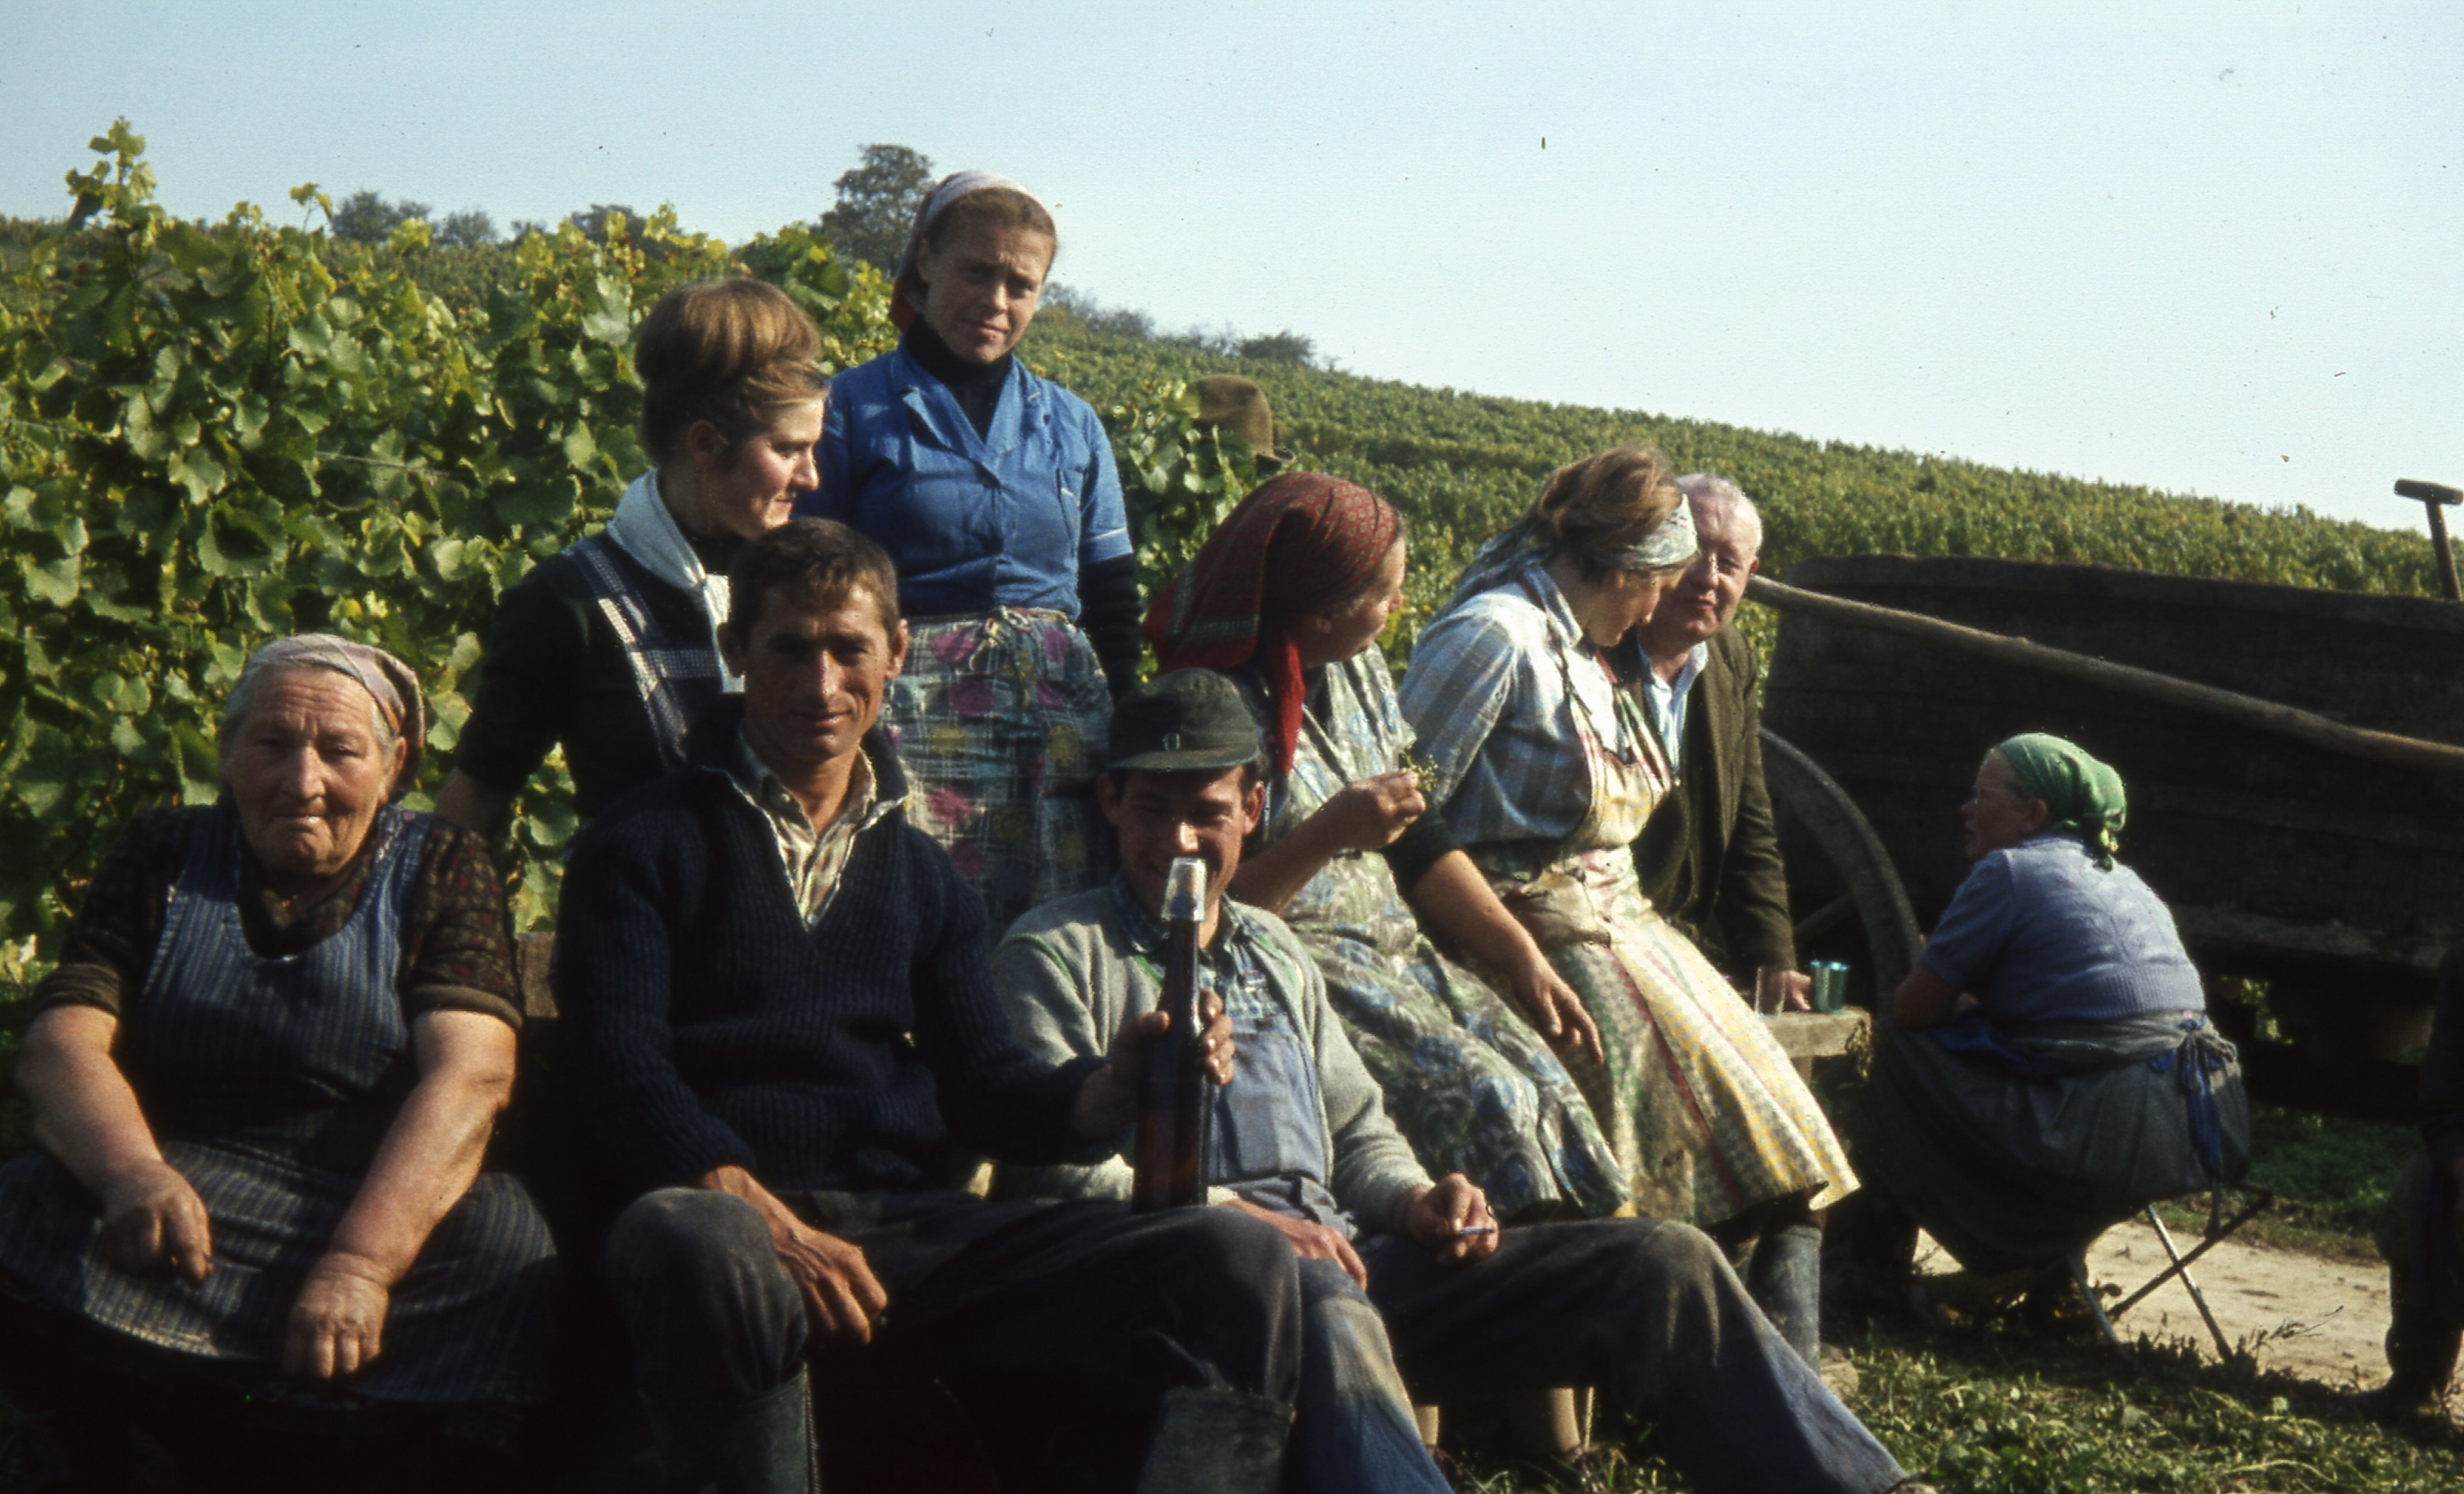 Gruppenfoto bei einer Lese 1963 in der Nähe von Albig und Armsheim.